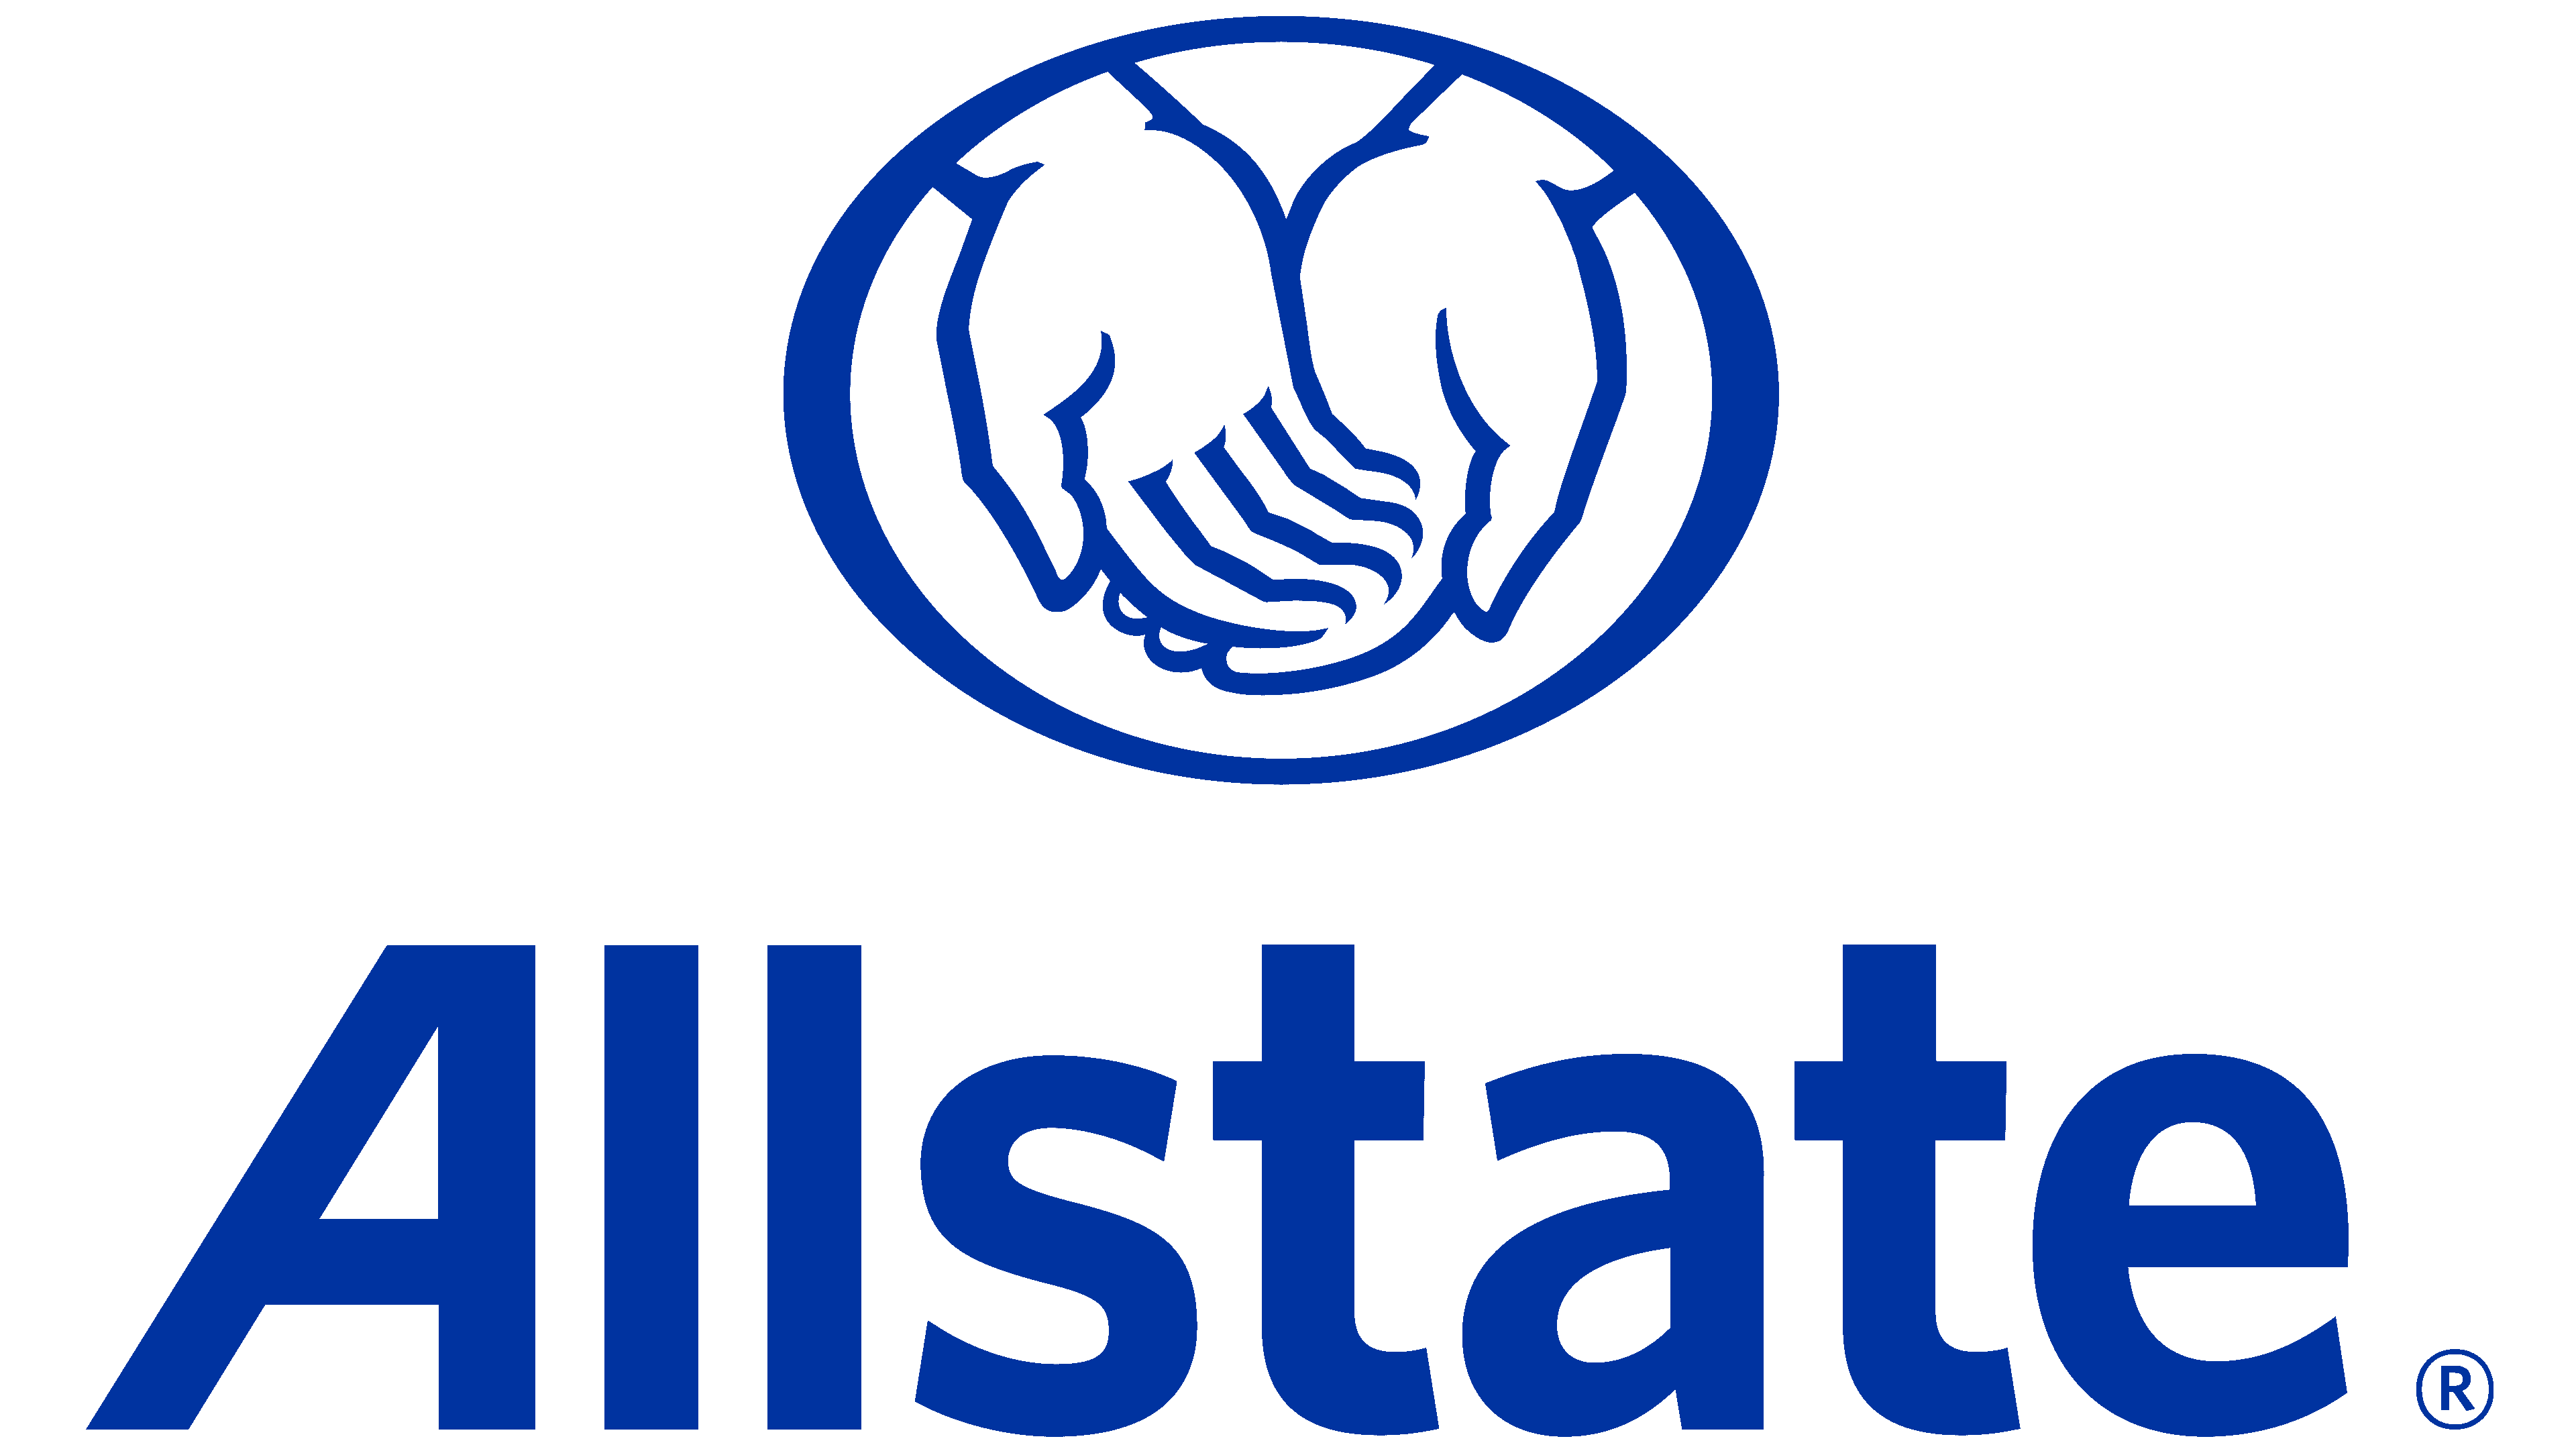 The logo for Allstate.